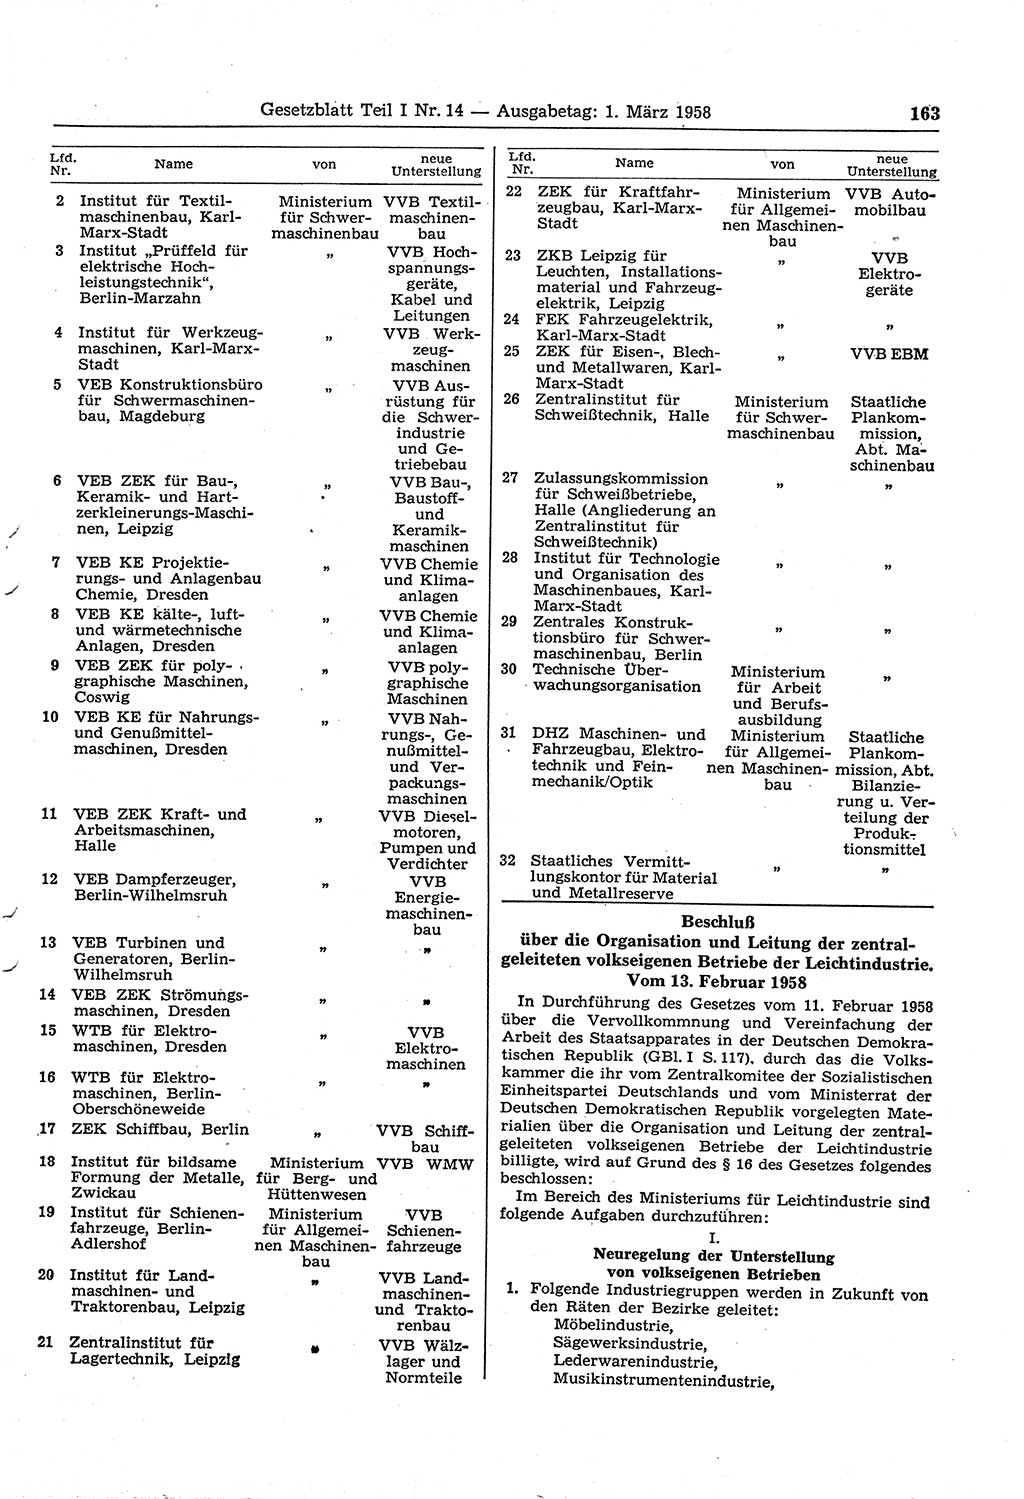 Gesetzblatt (GBl.) der Deutschen Demokratischen Republik (DDR) Teil Ⅰ 1958, Seite 163 (GBl. DDR Ⅰ 1958, S. 163)